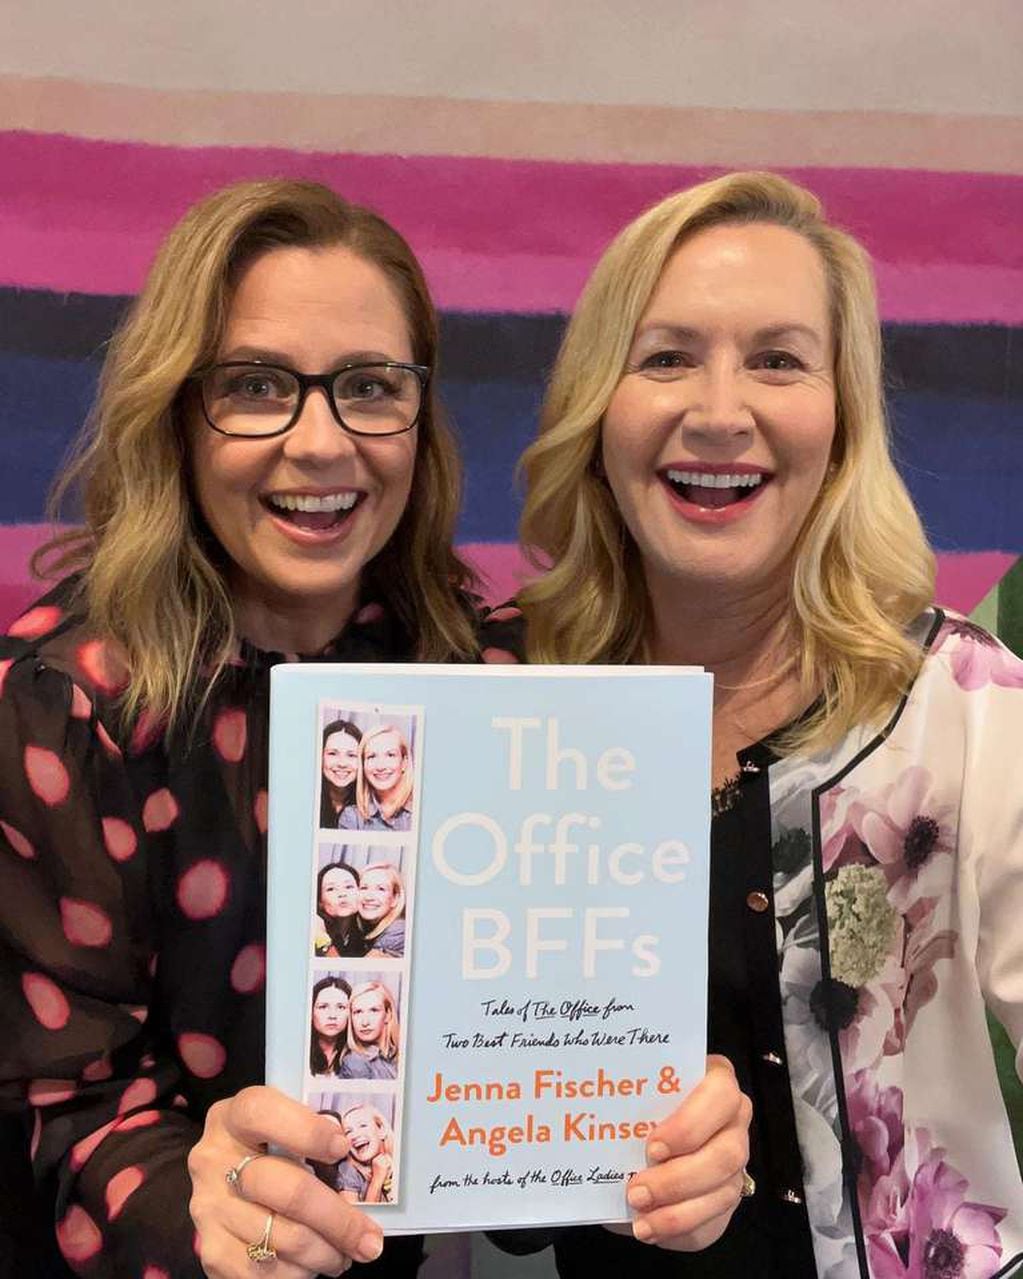 Jenna y Angela sacaron su propio libro juntas